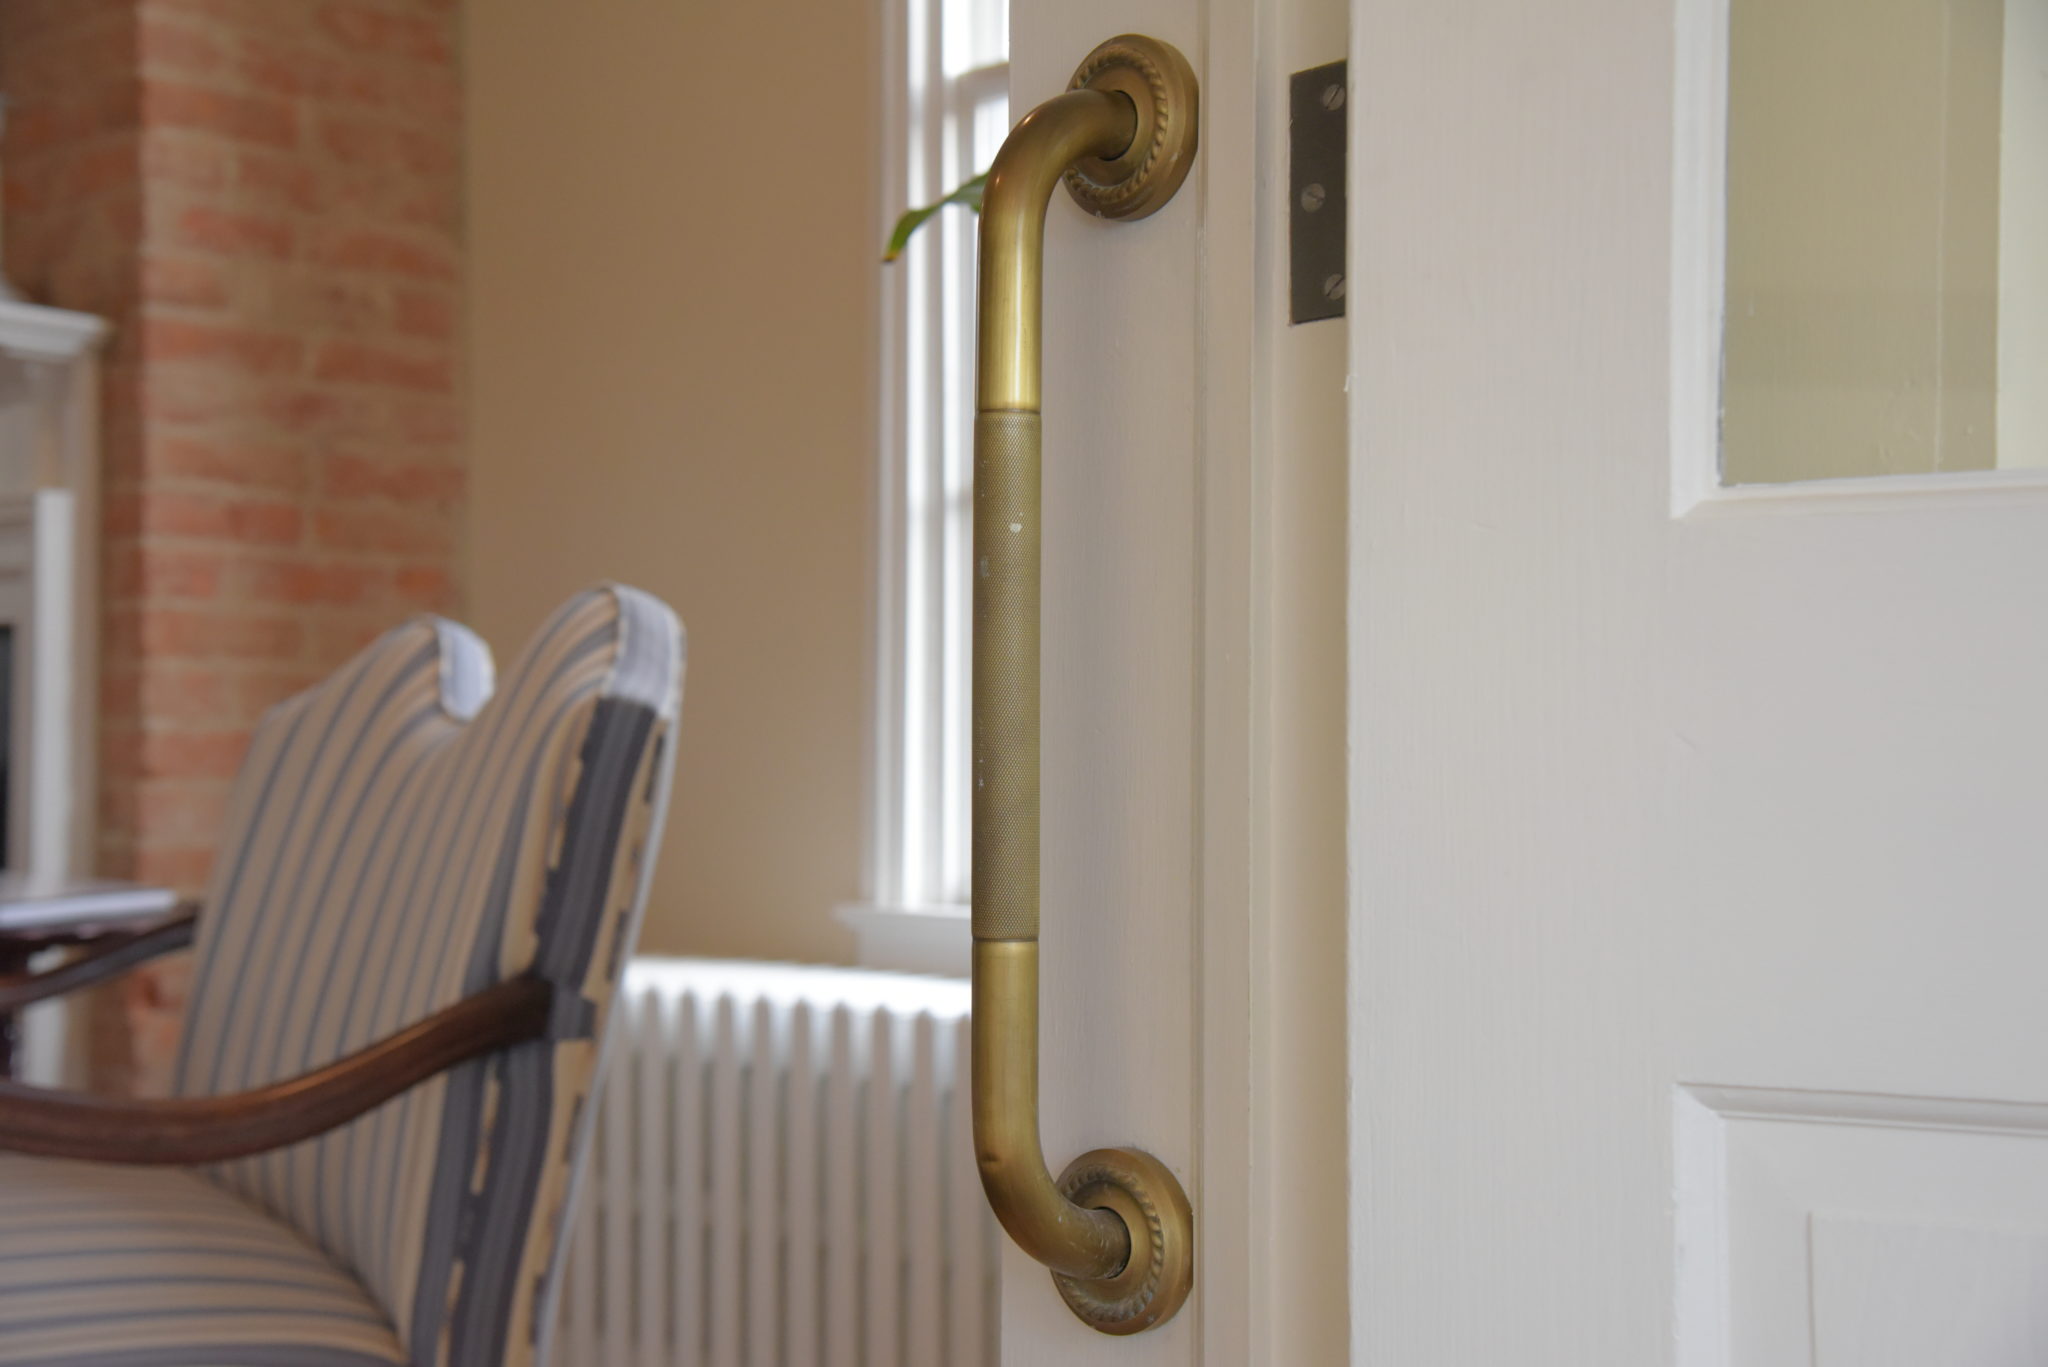 a brass grab bar installed in a doorway